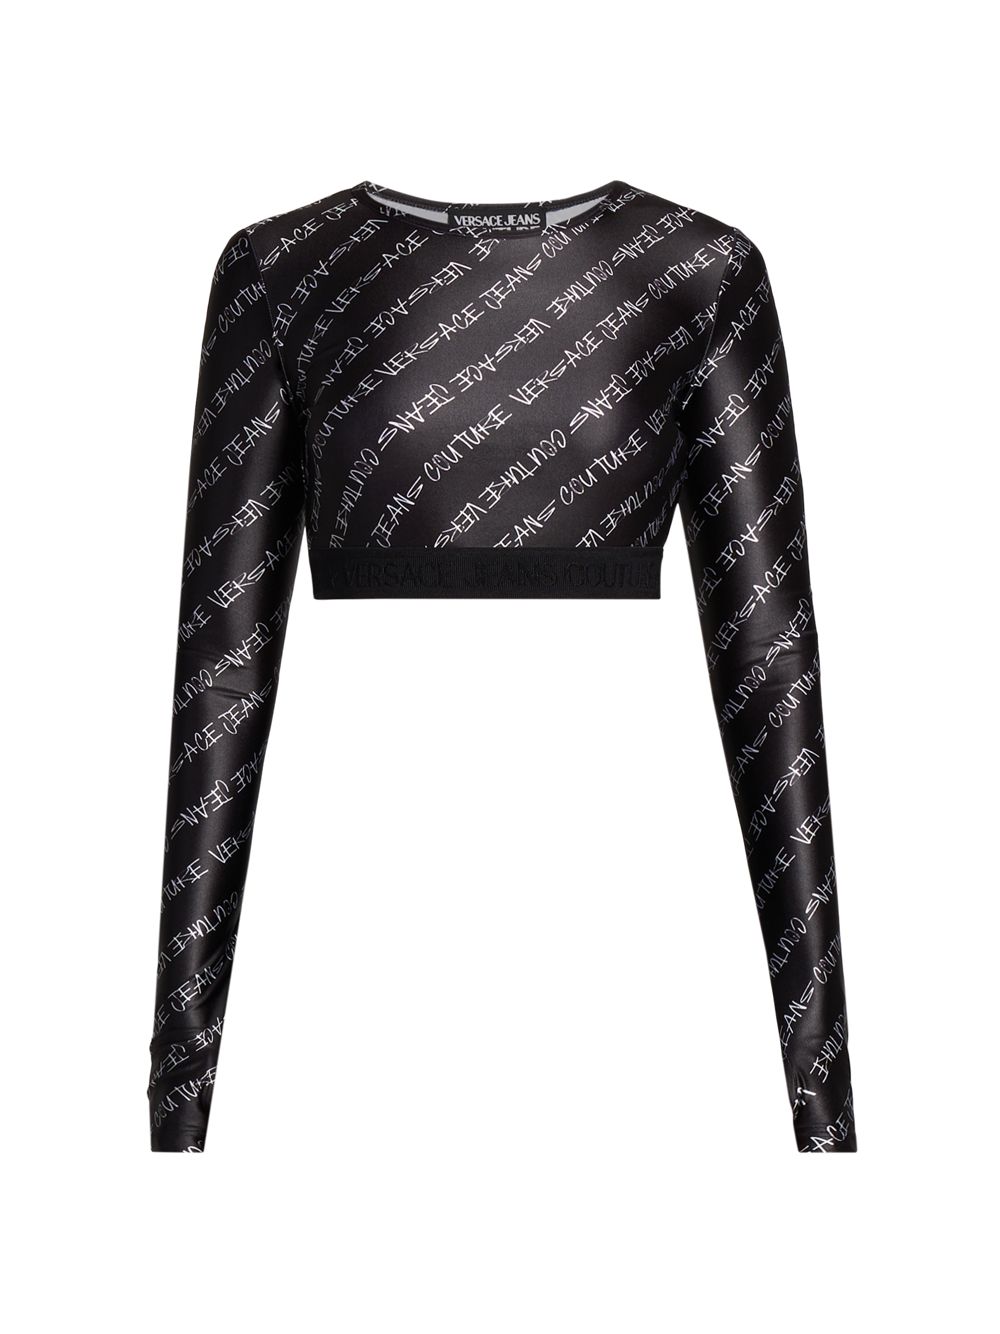 Укороченный топ с фирменным логотипом Versace Jeans Couture, черный